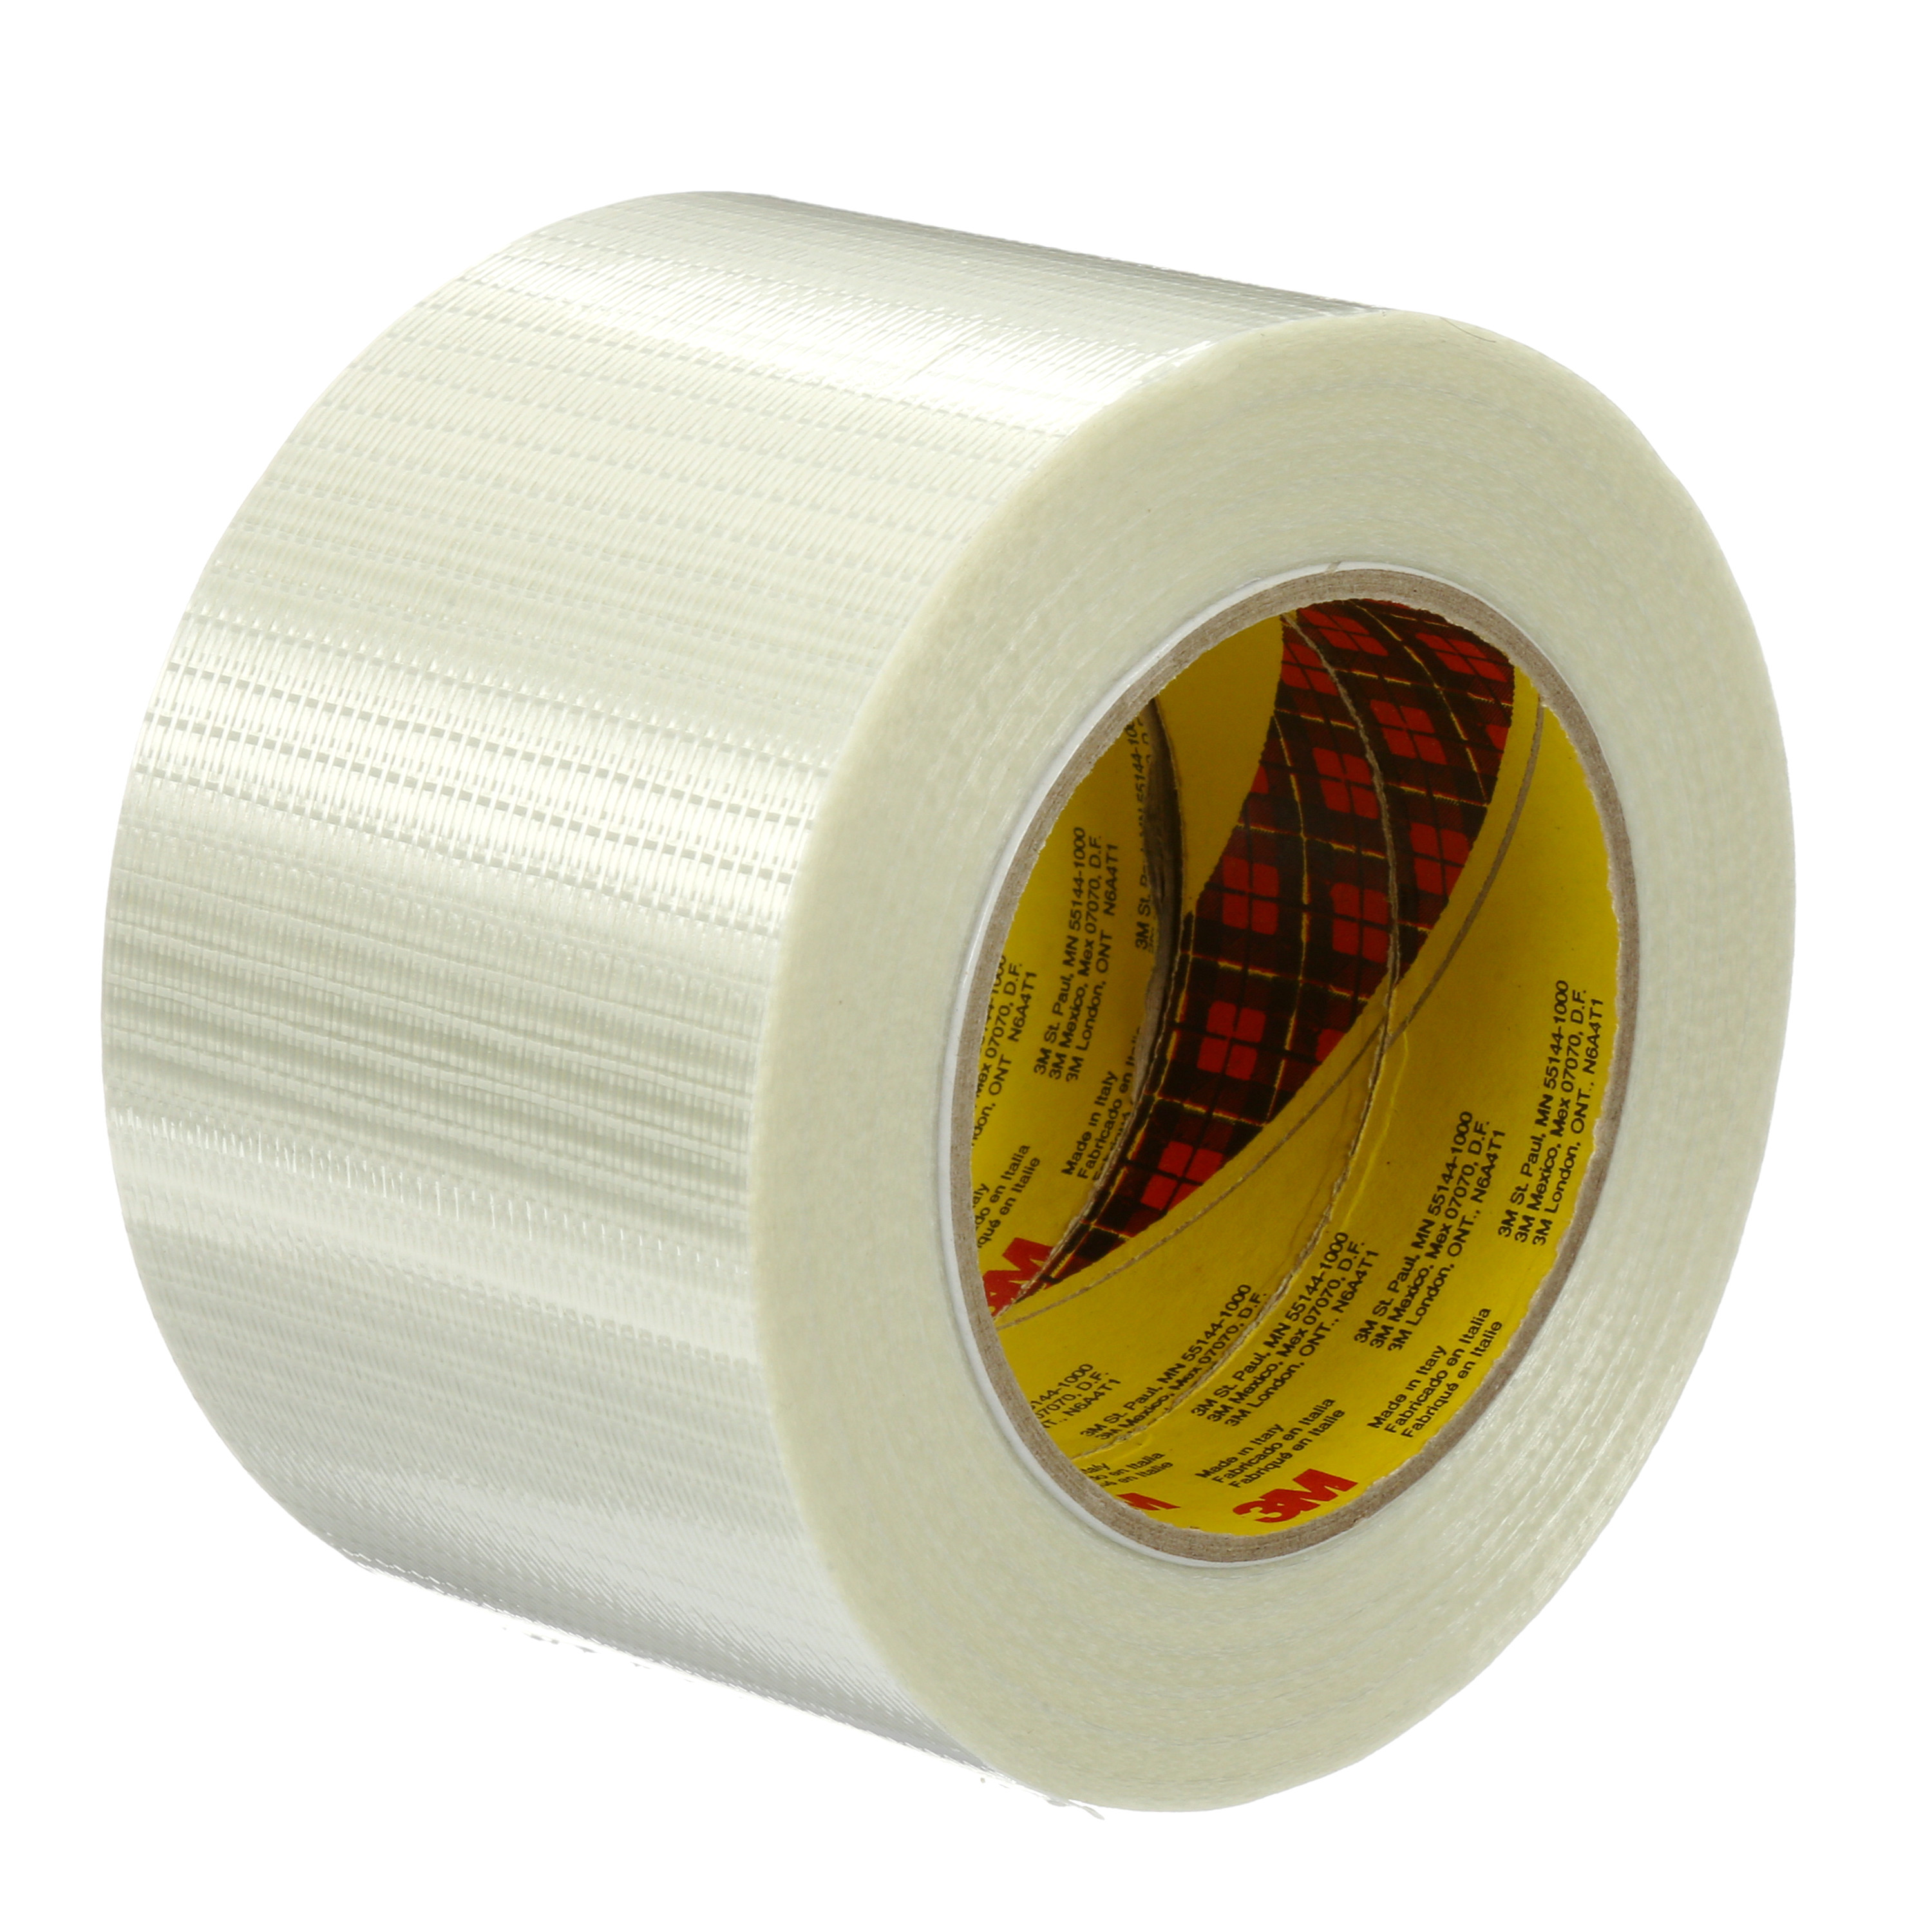 Scotch® Bi-Directional Filament Tape 8959, Clear, 4 in x 60 yd, 5.7 mil,
12 rolls per case